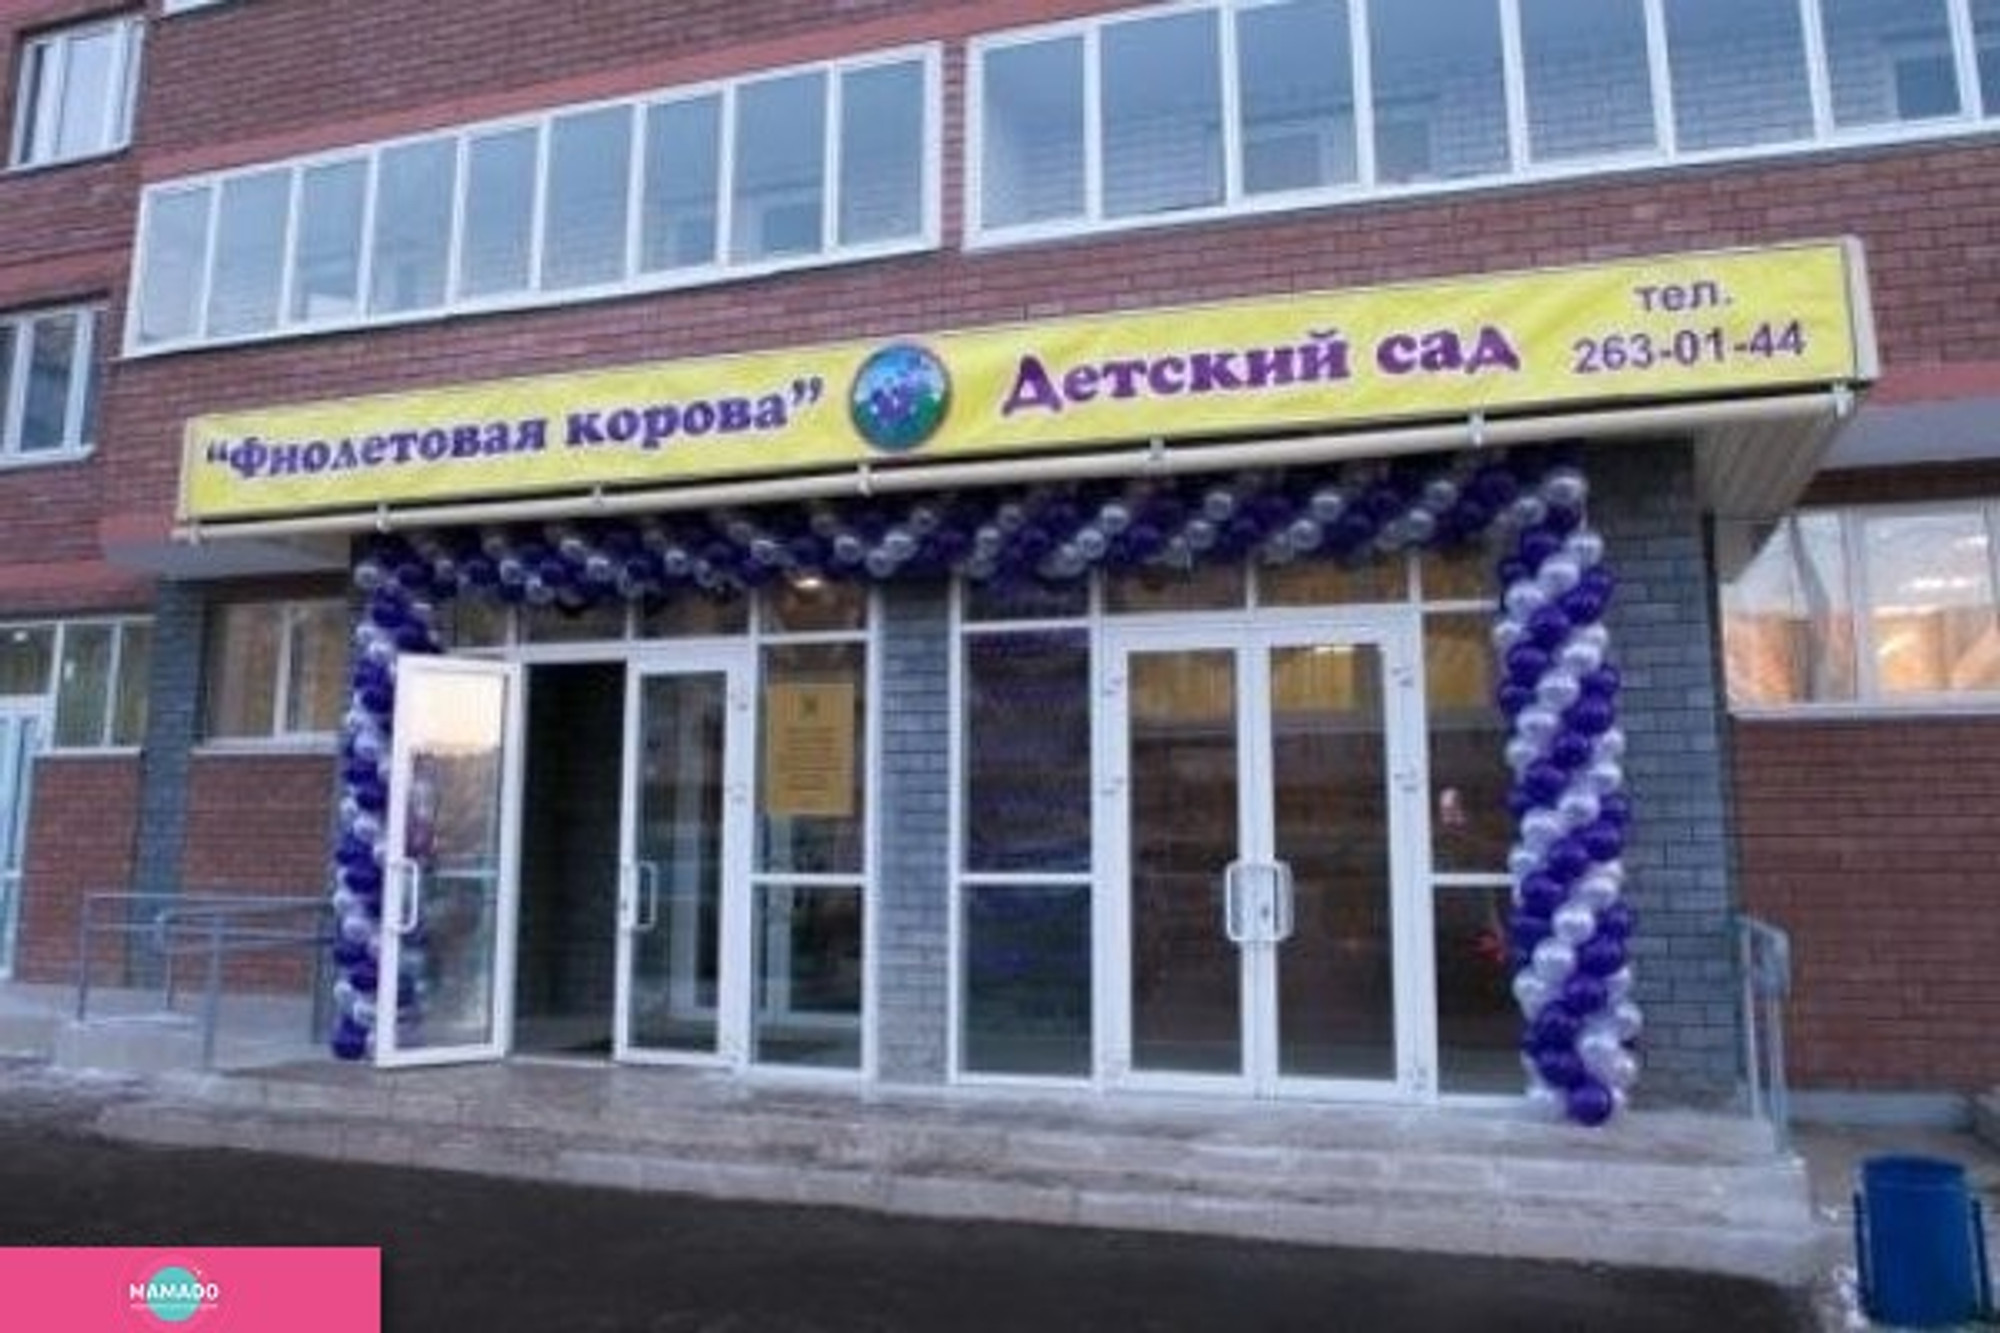 "Фиолетовая корова" на Глушко, частный детский сад, каток, фигурное катание и хоккей для дошкольников, Казань 